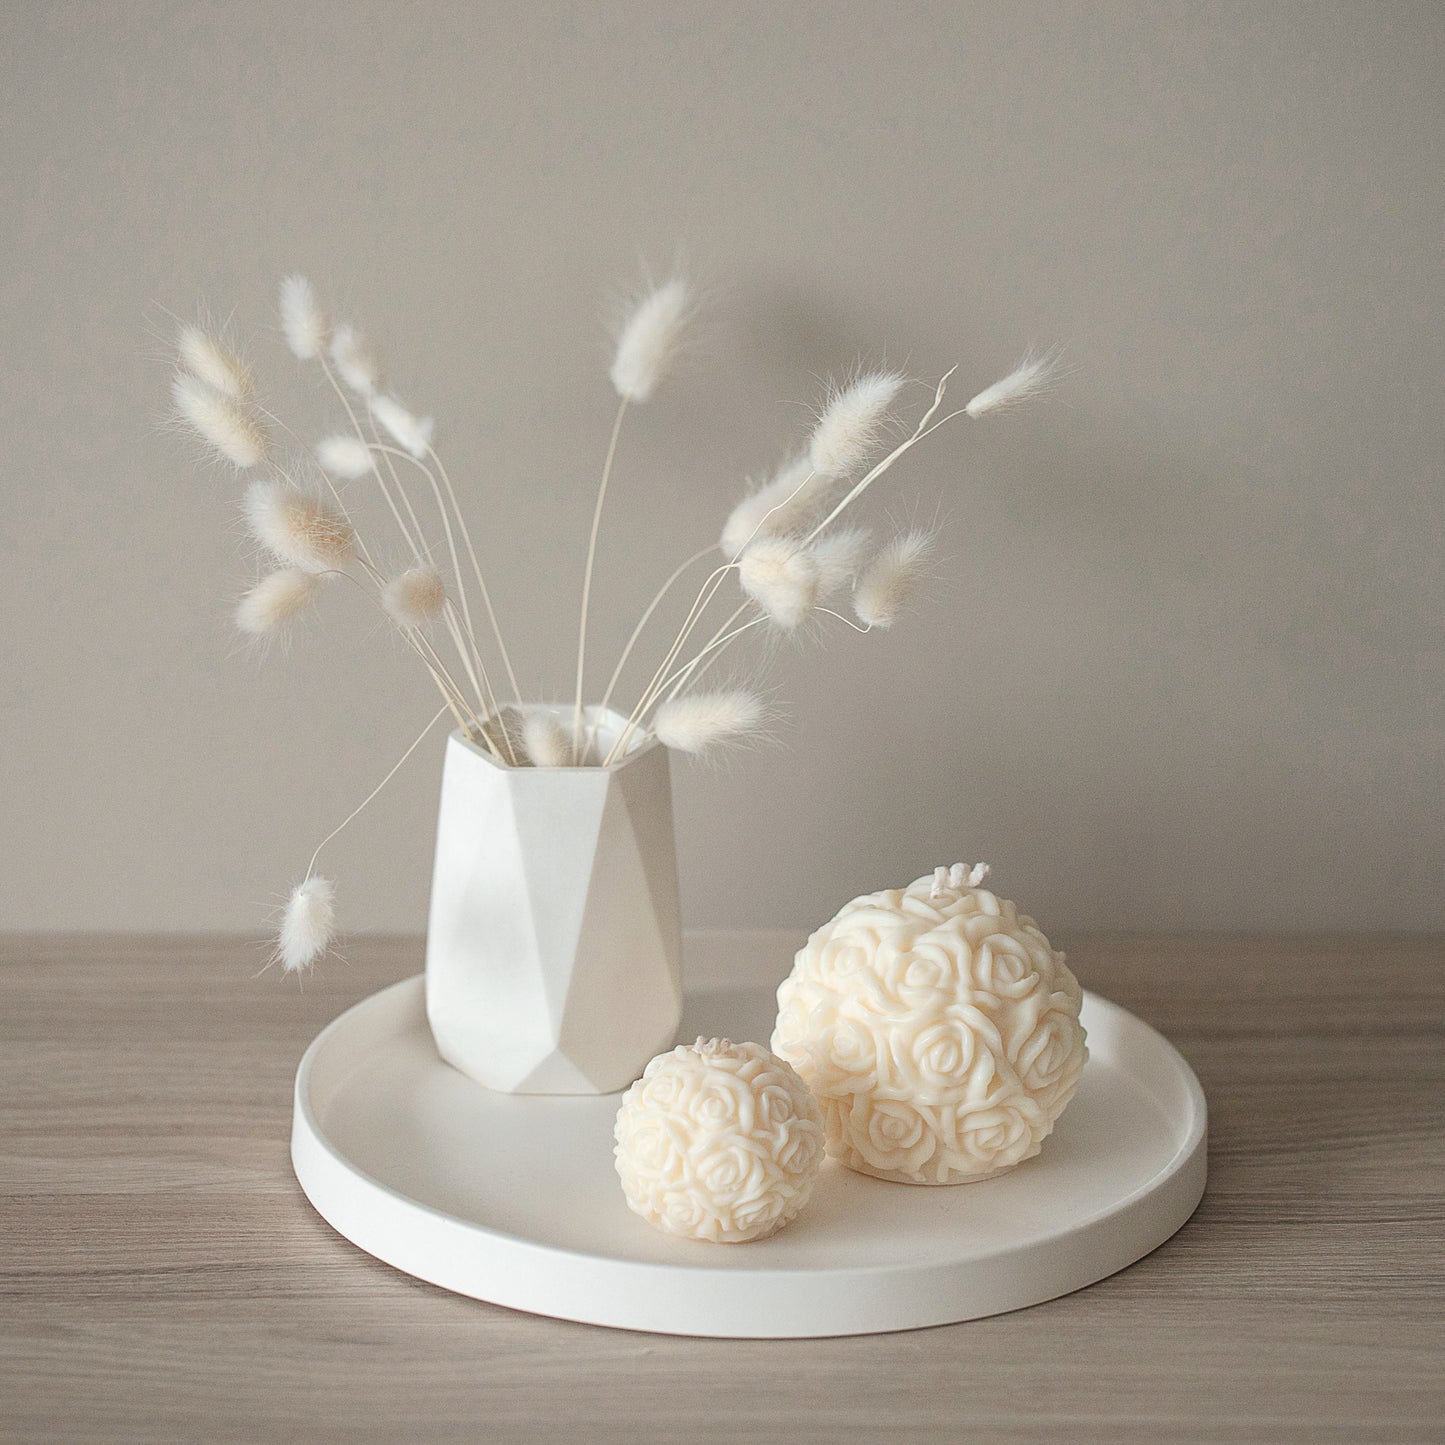 Diamond Shape Vase for Dry Flowers - Flower Pot Home Decor, Housewarming Gift